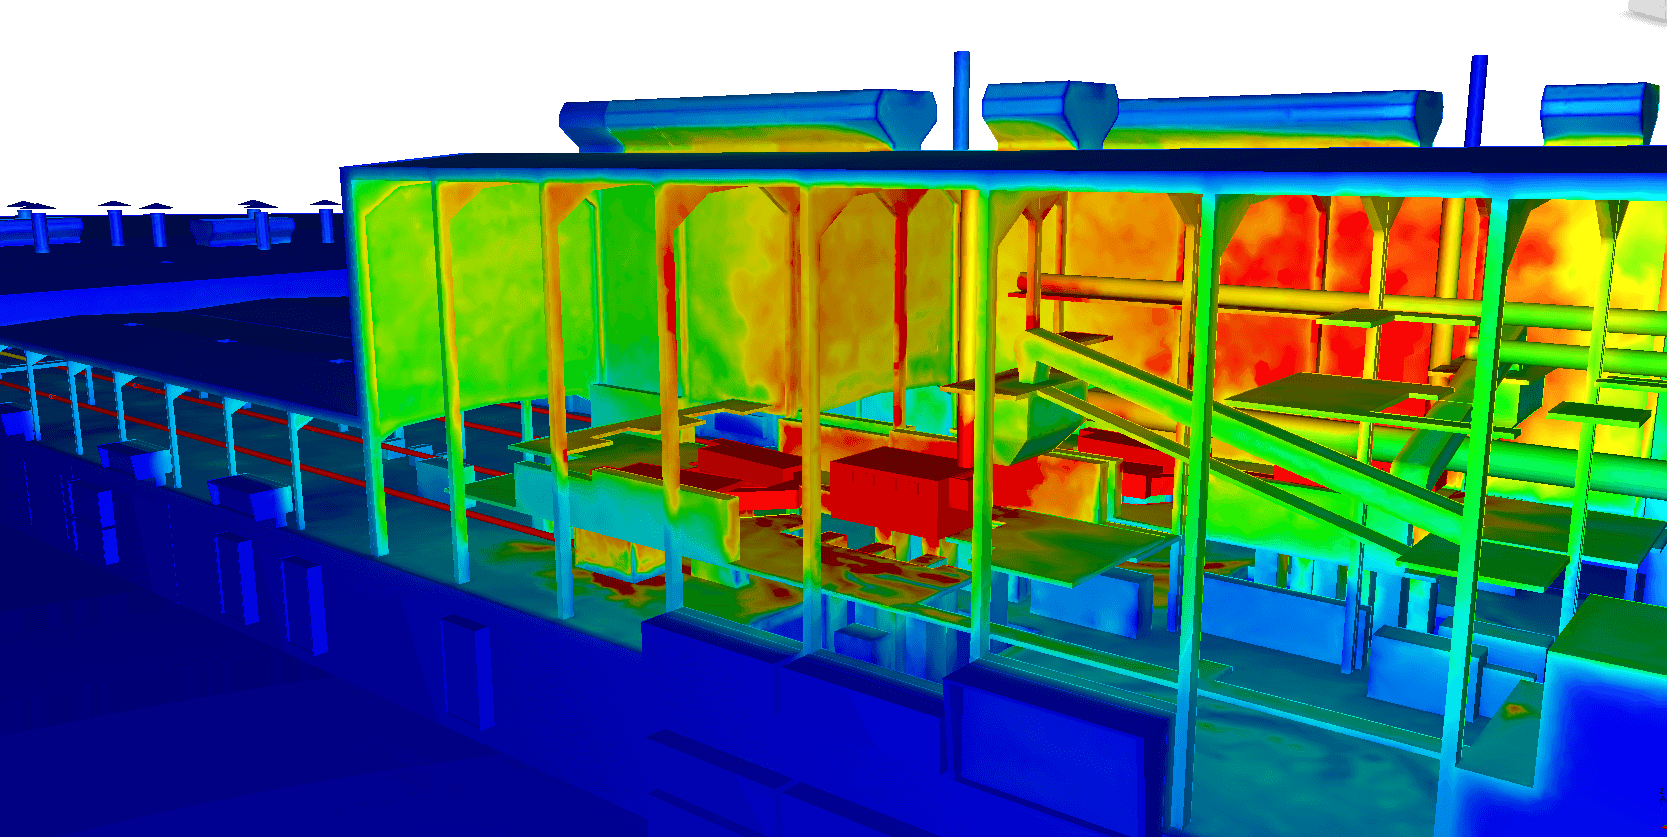 Thermographie numérique d'une usine - verrerie - simulation CFD